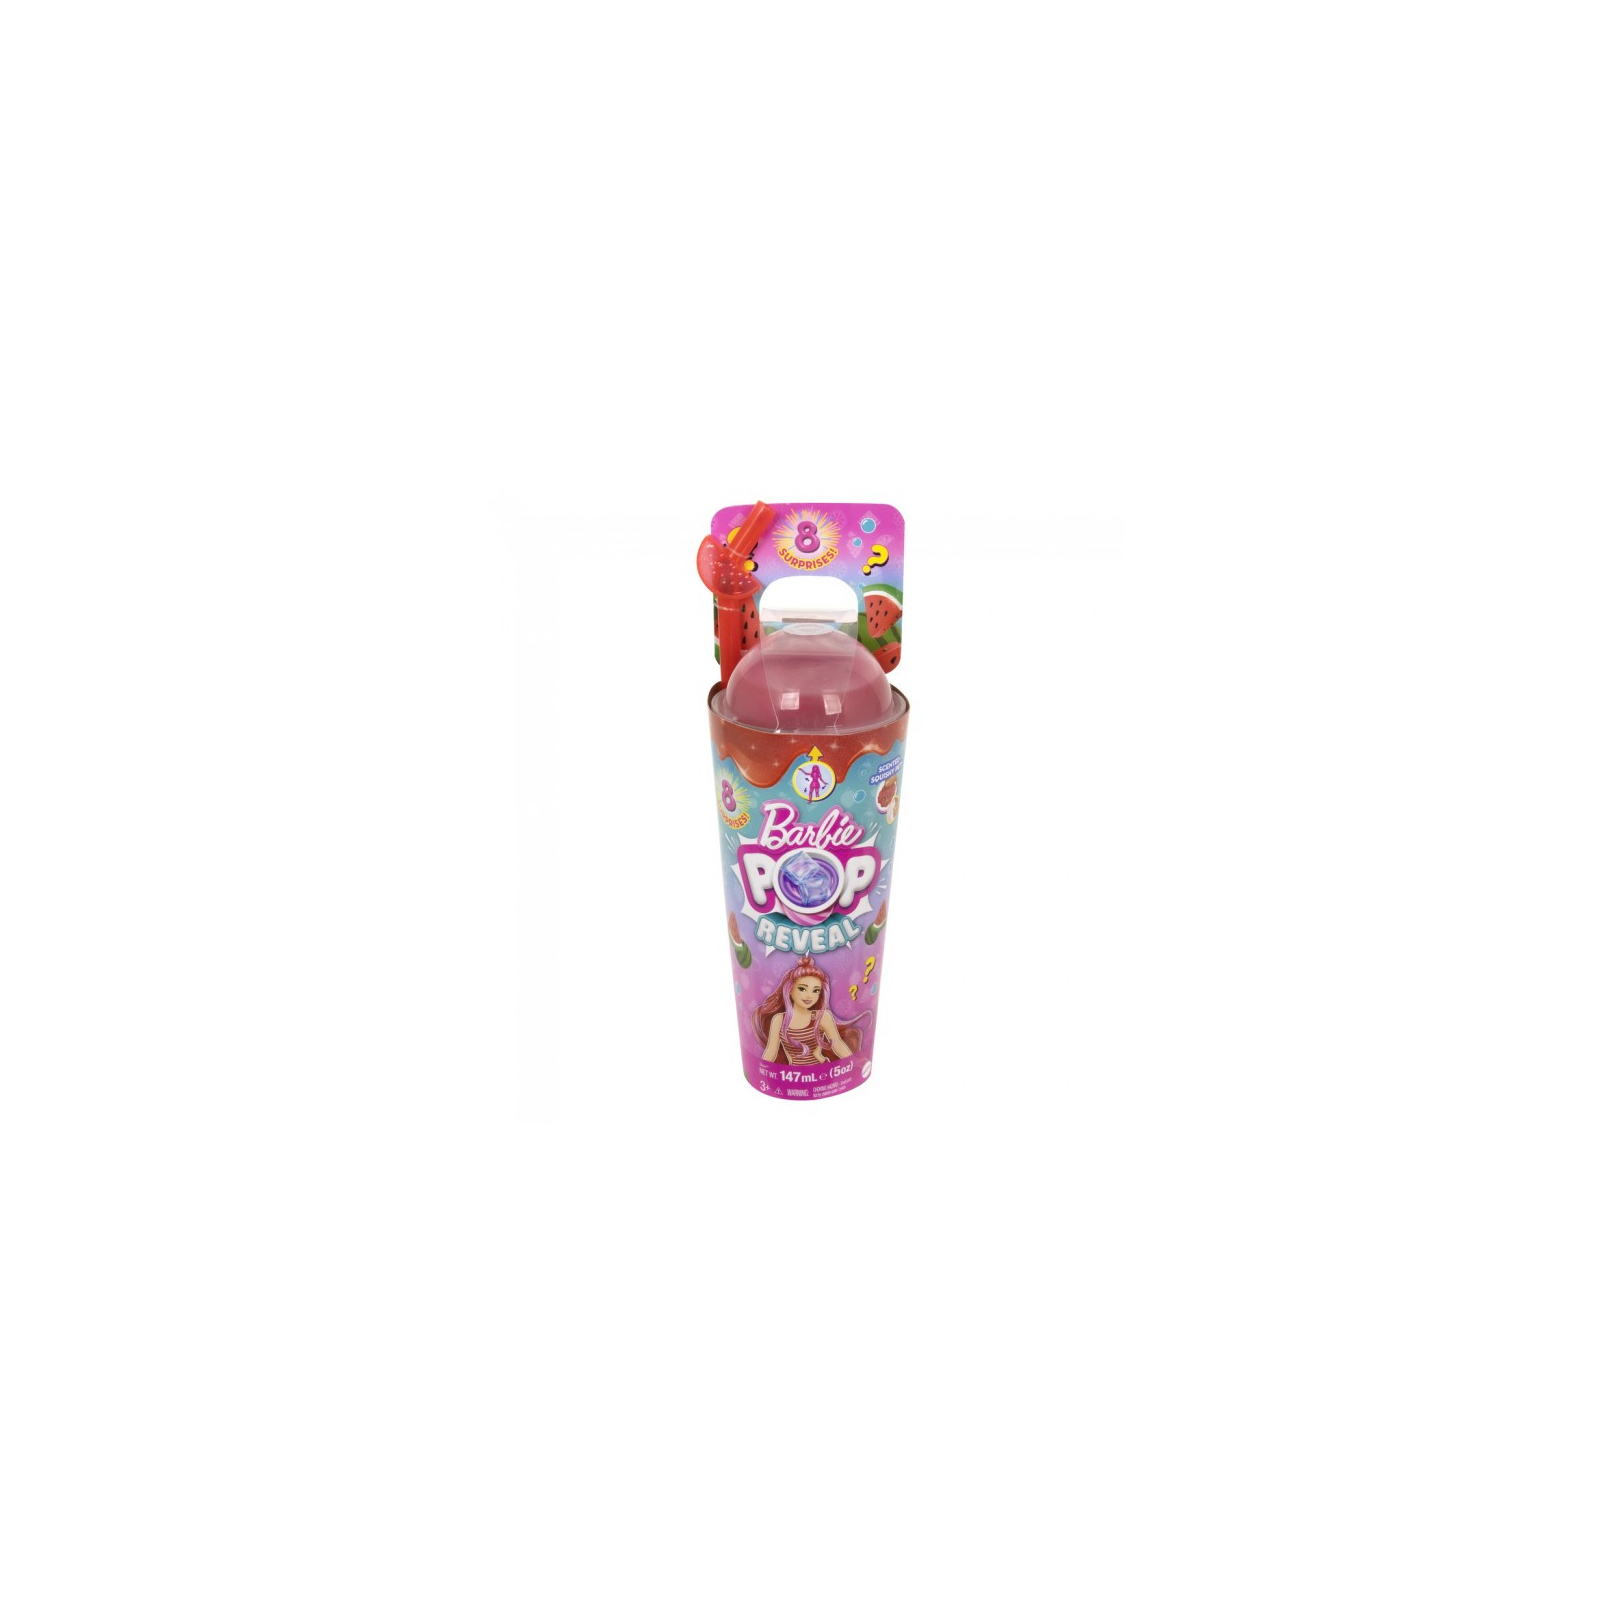 Кукла Barbie Pop Reveal серии Сочные фрукты – арбузный смузи (HNW43) изображение 6